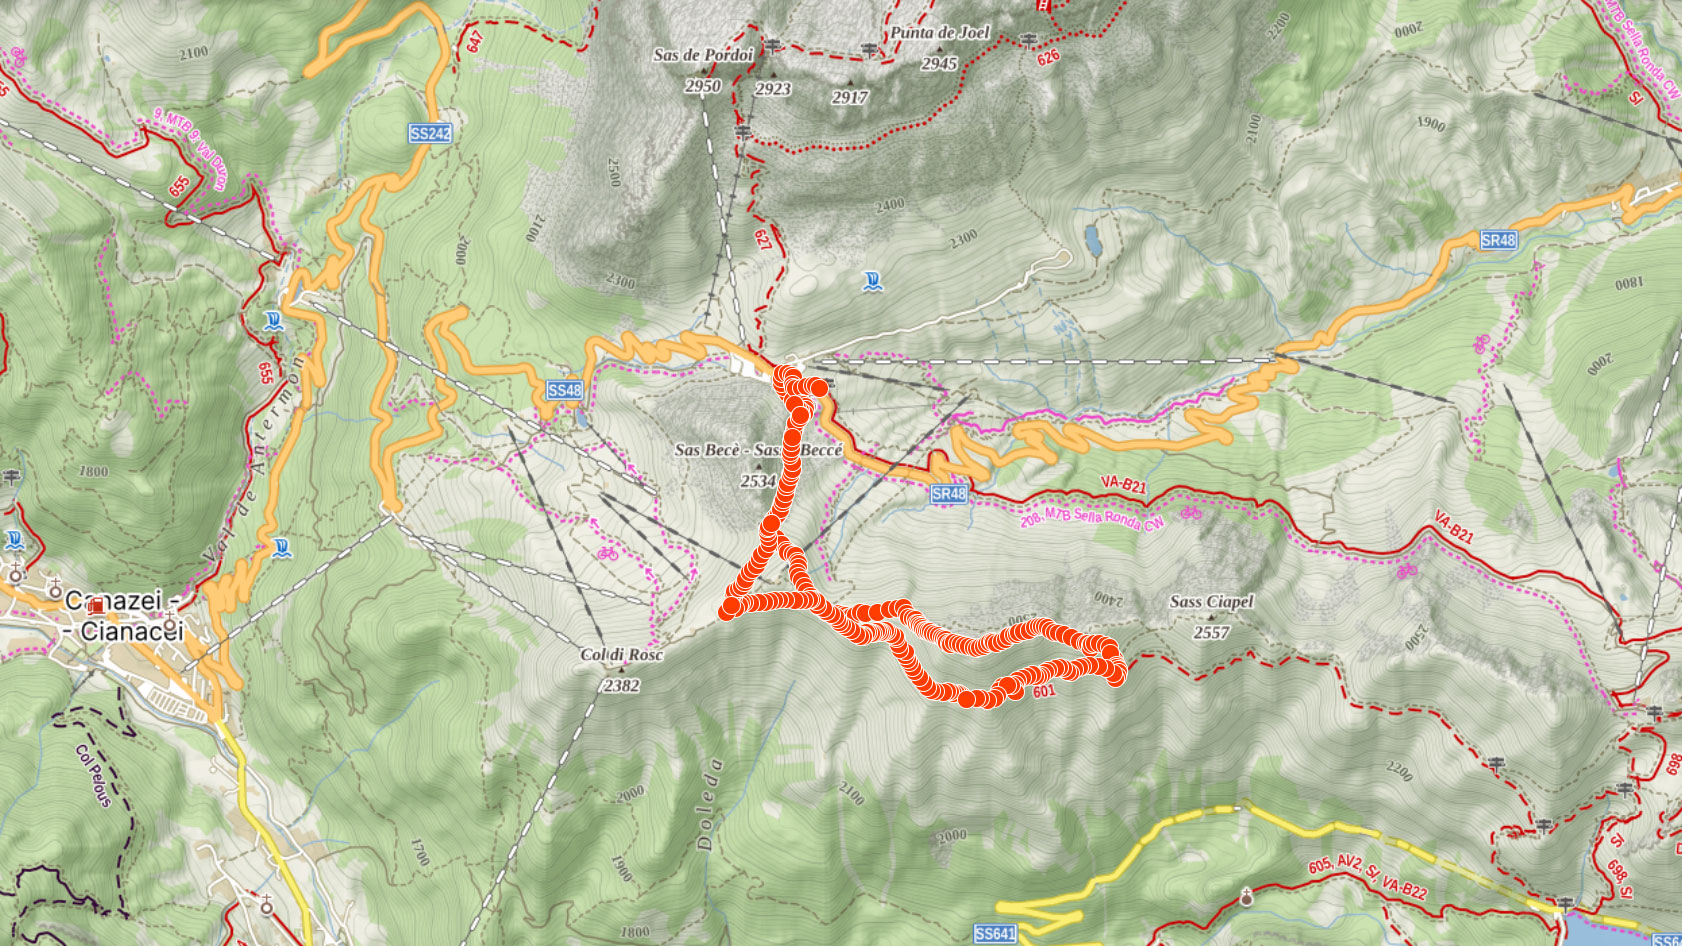 Mapa výletu po hřebeni na Sass Ciapel v Itálii